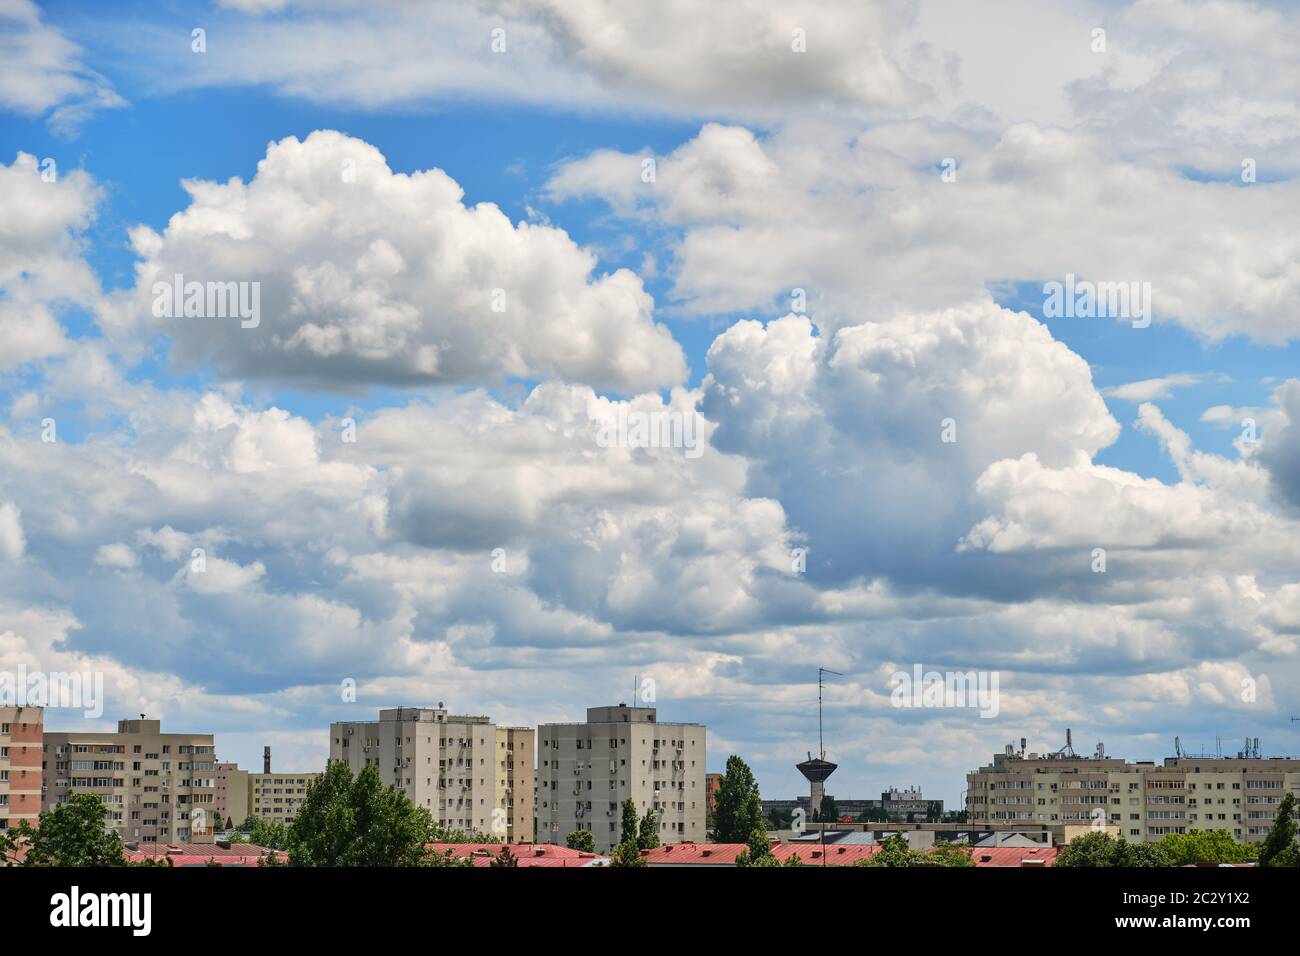 Stratokumuluswolken bilden eine Schicht und bewegen sich schnell von links nach rechts über Stadtbauten, in einem Wohnviertel von Bukarest, Rumänien, Ost-E Stockfoto